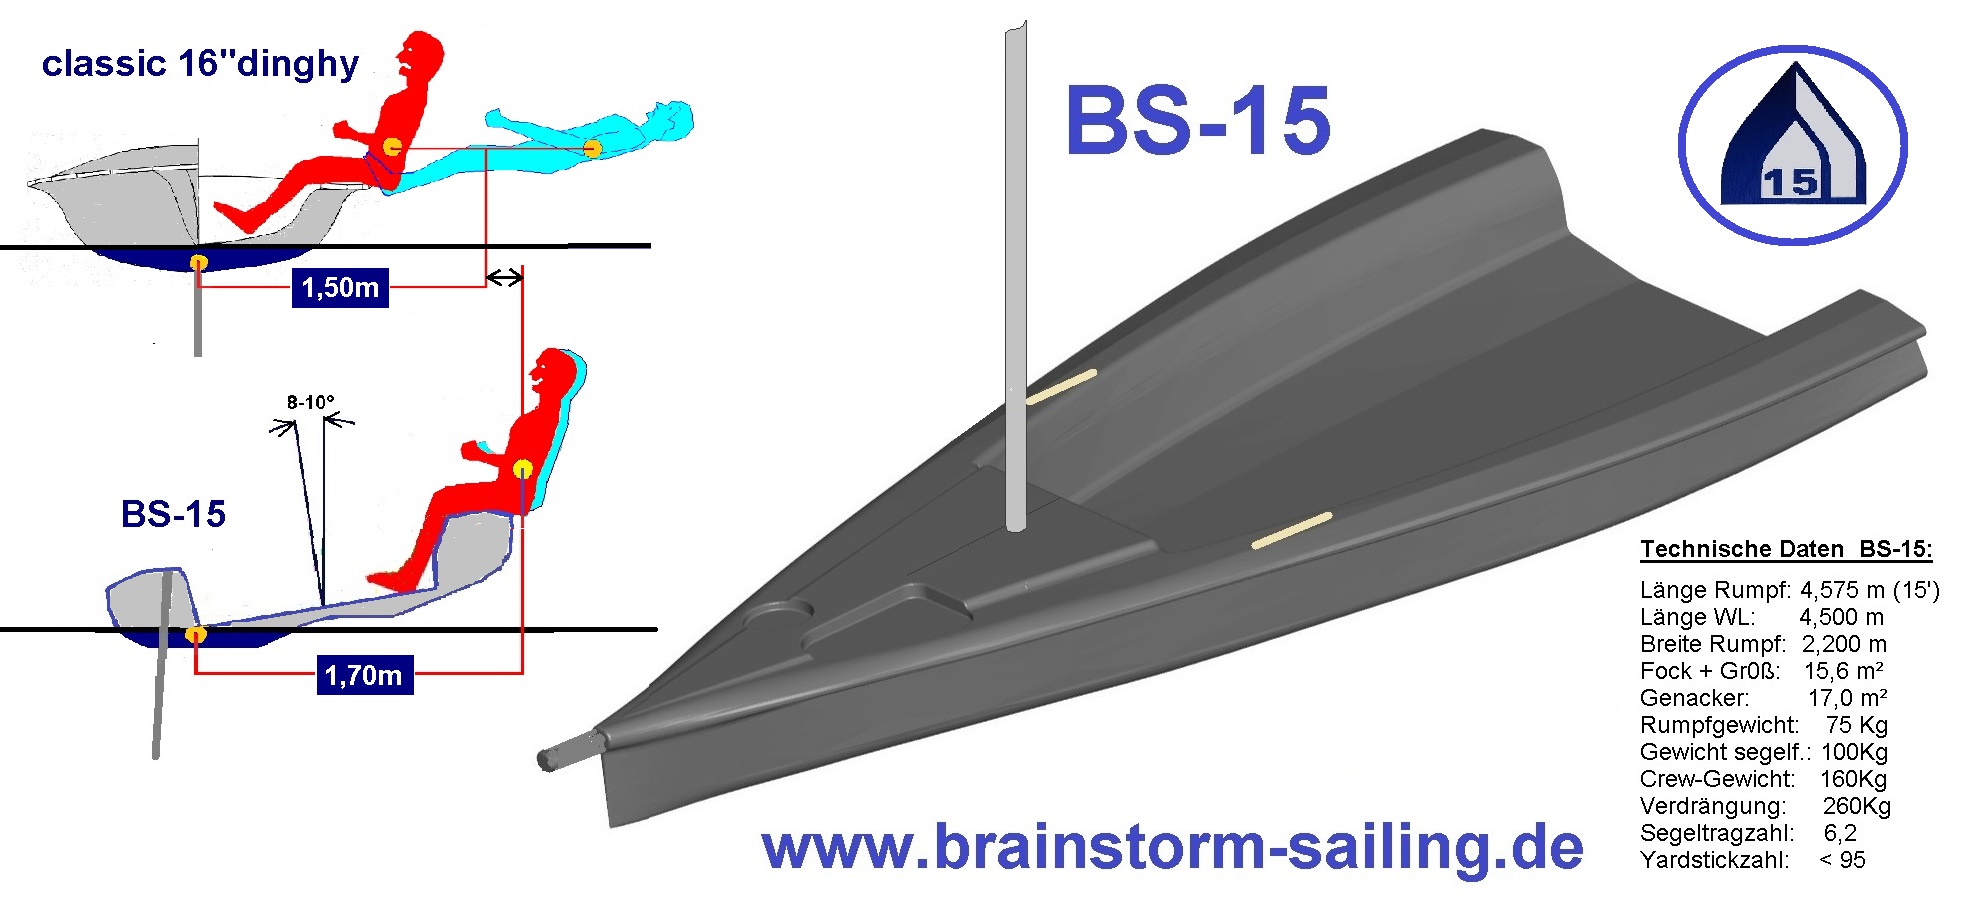 Boat Design – Neues Dinghy-Konzept